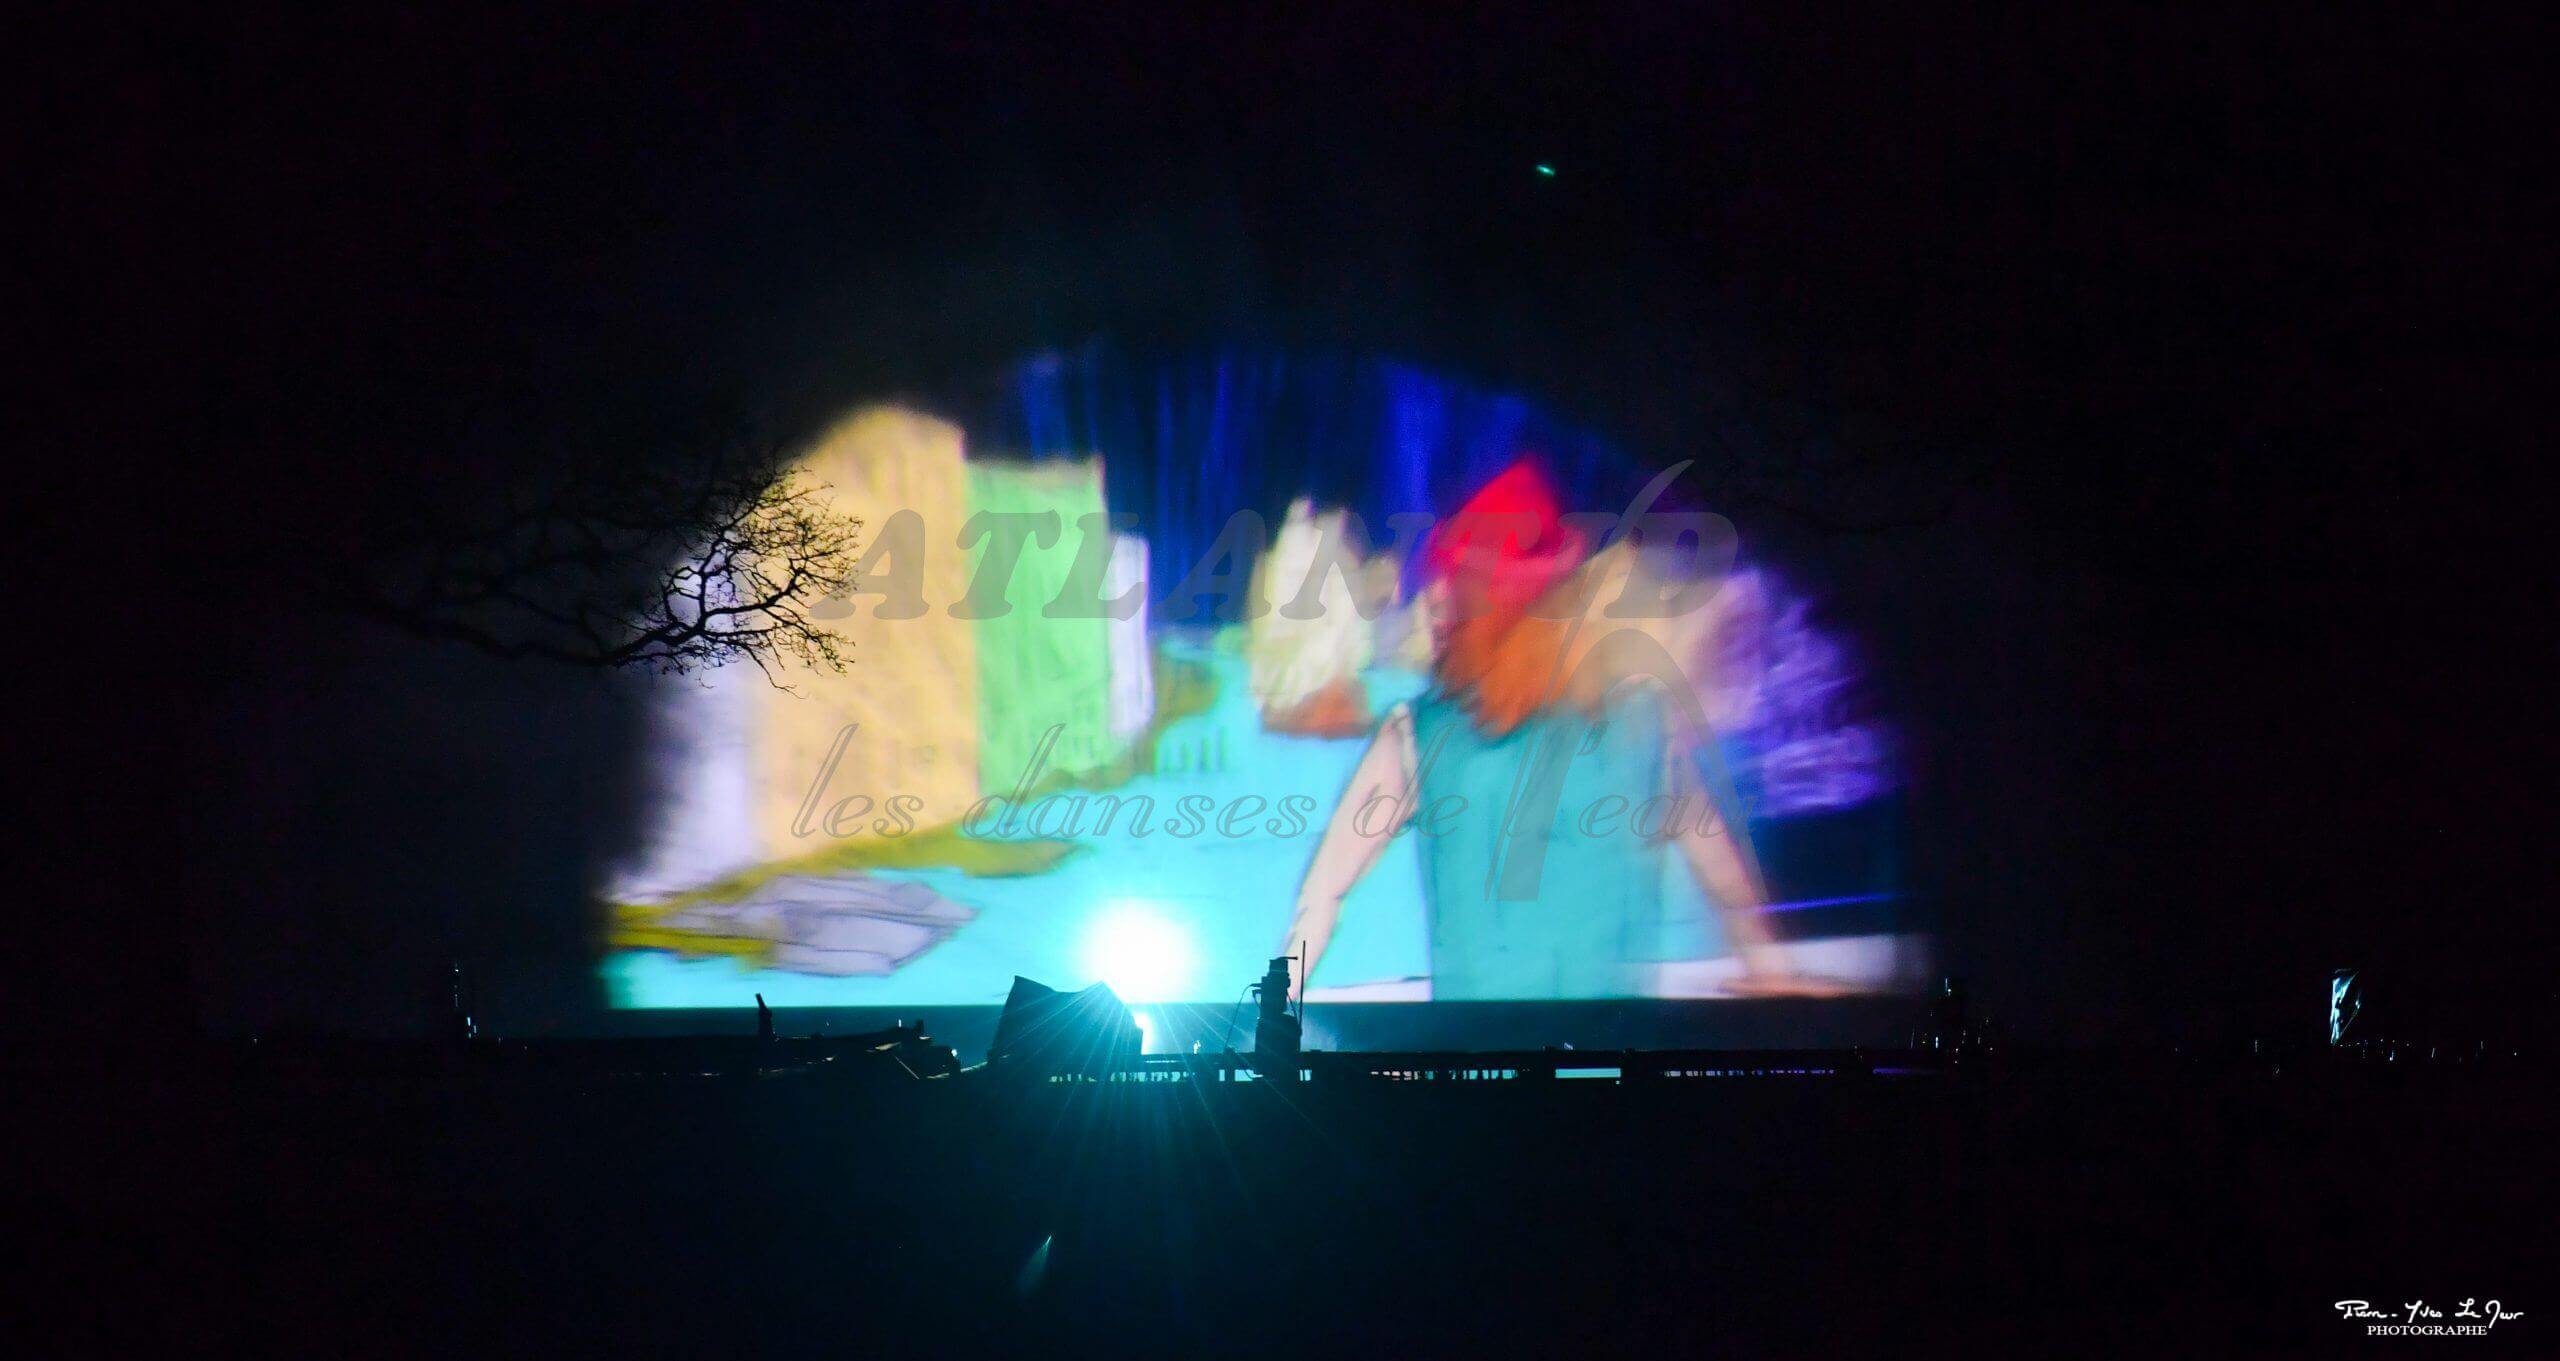 Atlantid - Marco Polo - Demi écran avec projection d'animation dessus